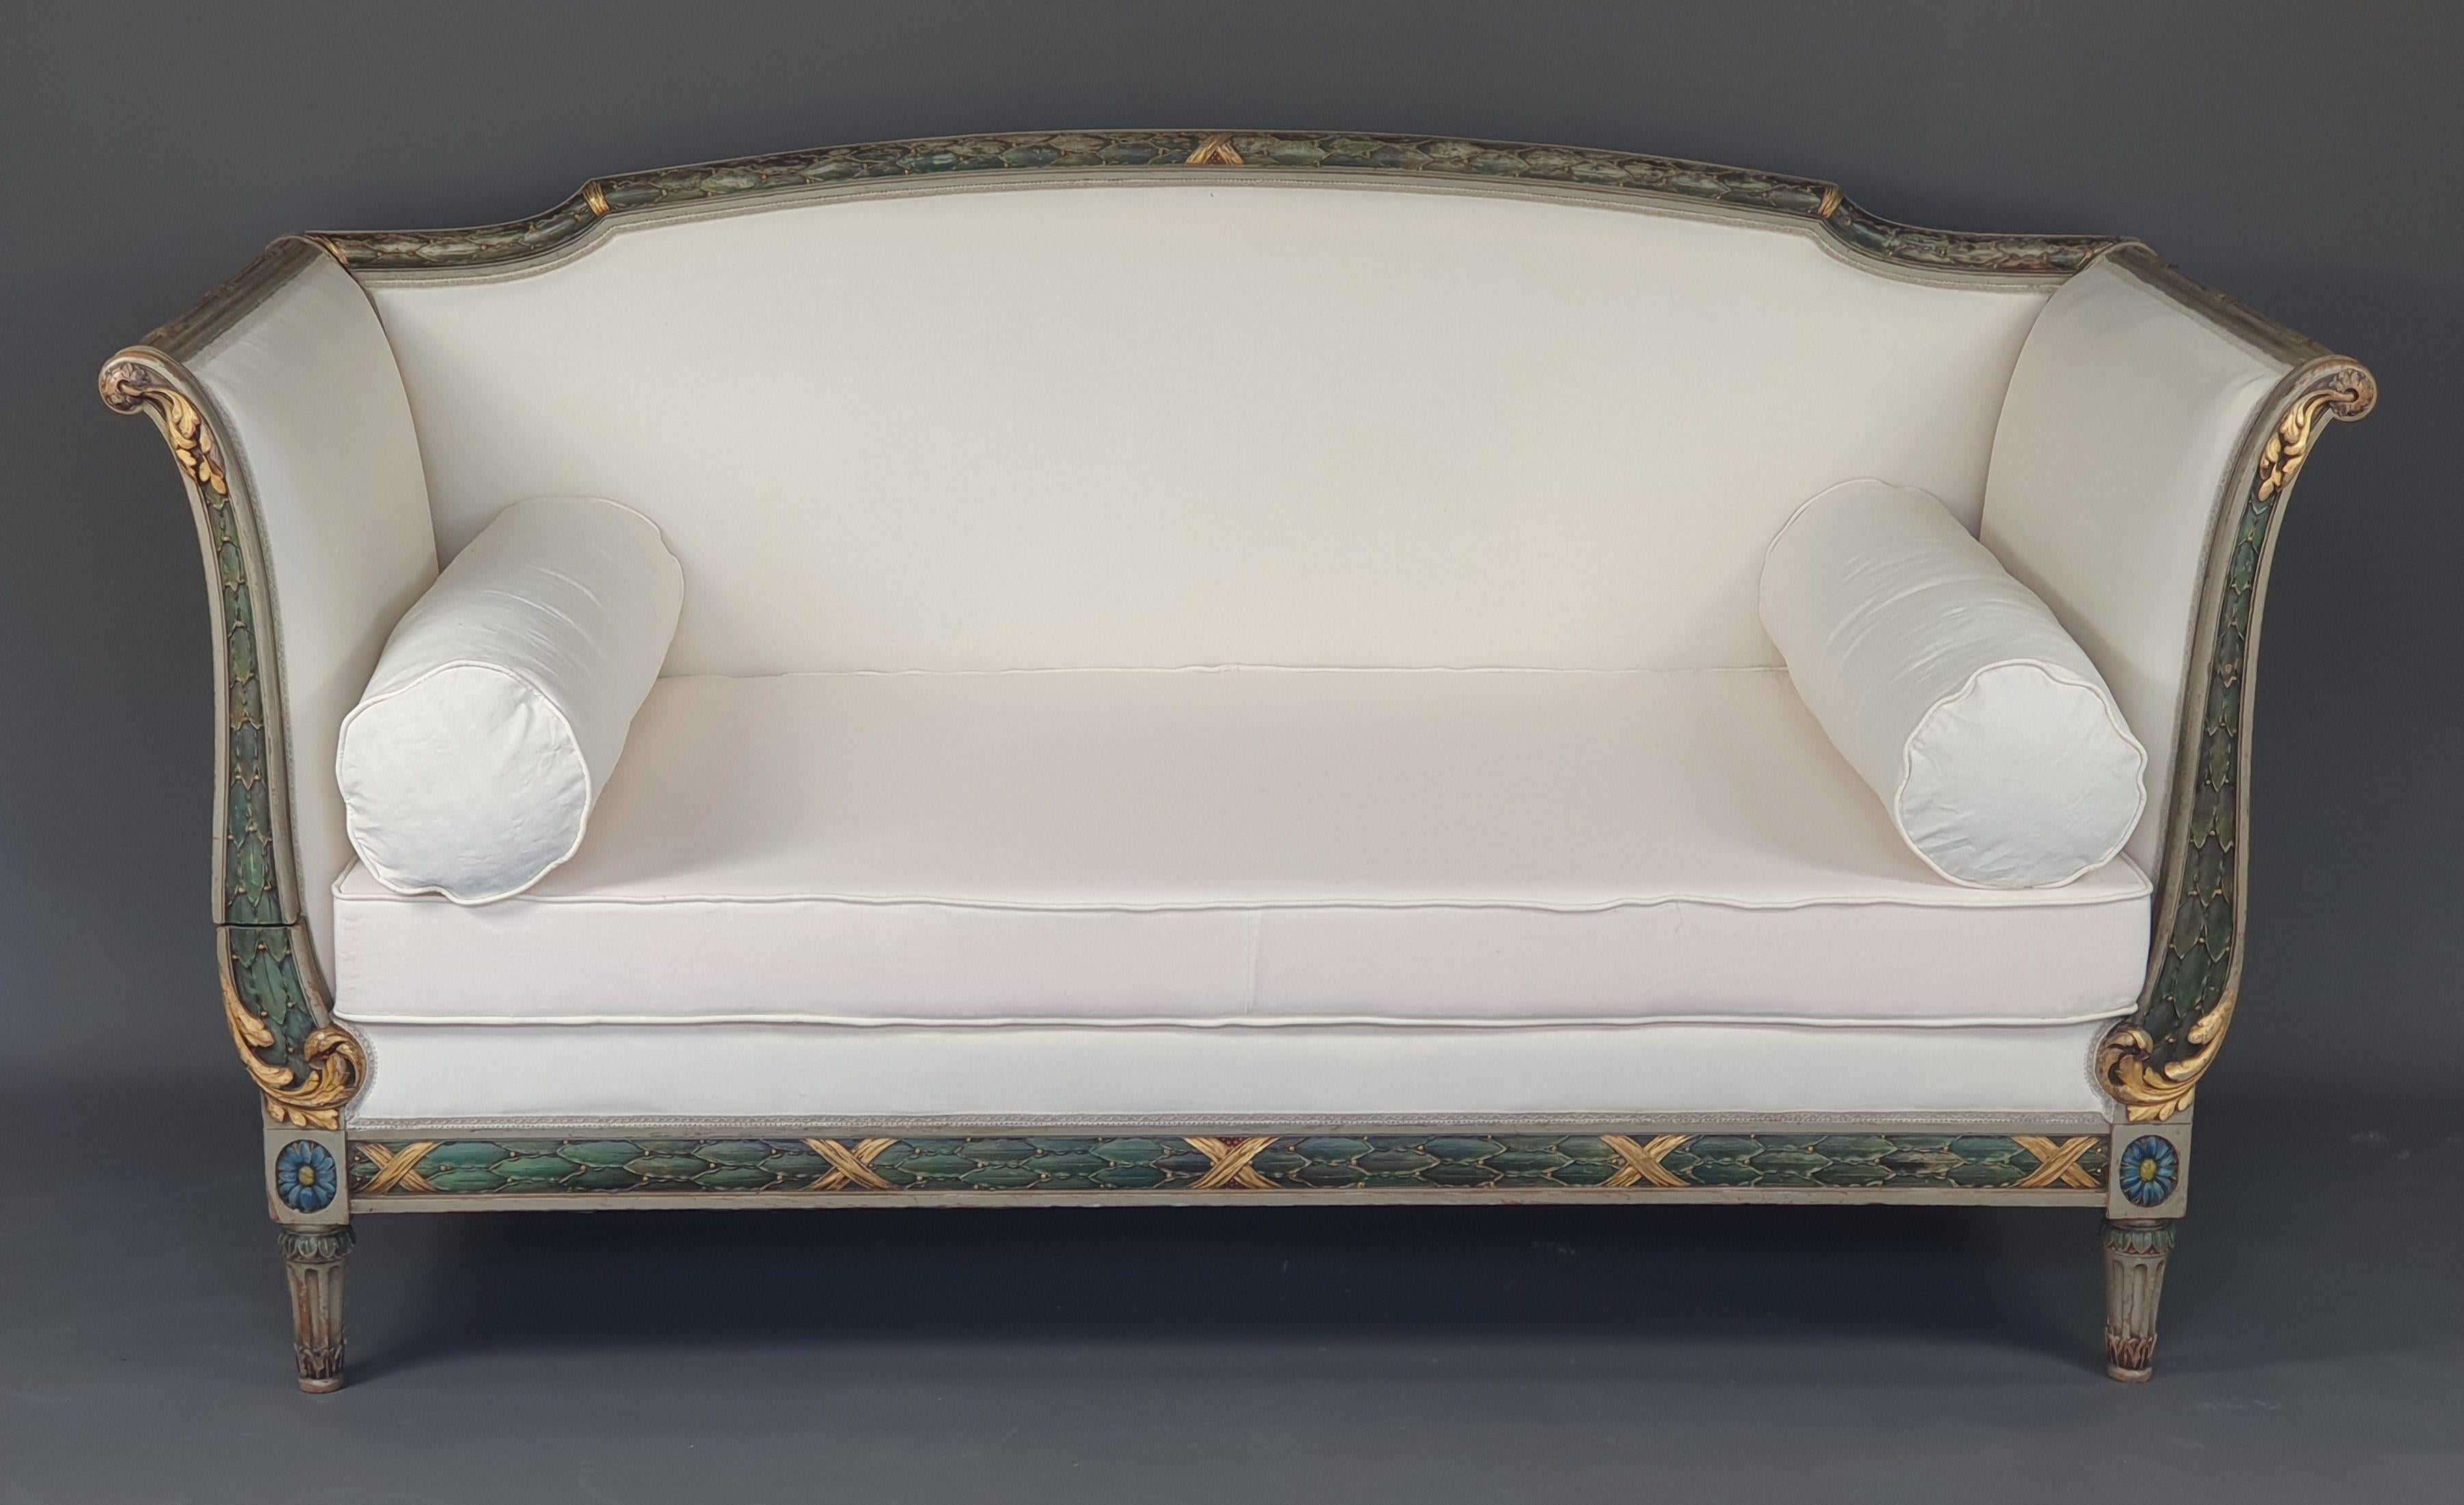 Magnificent Louis XVI Sofa im Stil der Ottomane in grau lackiertem Holz und grün, blau und gold rechampi mit reichen geschnitzten Dekoration von Rollen, gewickelt Laub, ruht auf vier kannelierten Beinen, die Verbindungswürfel in Form von